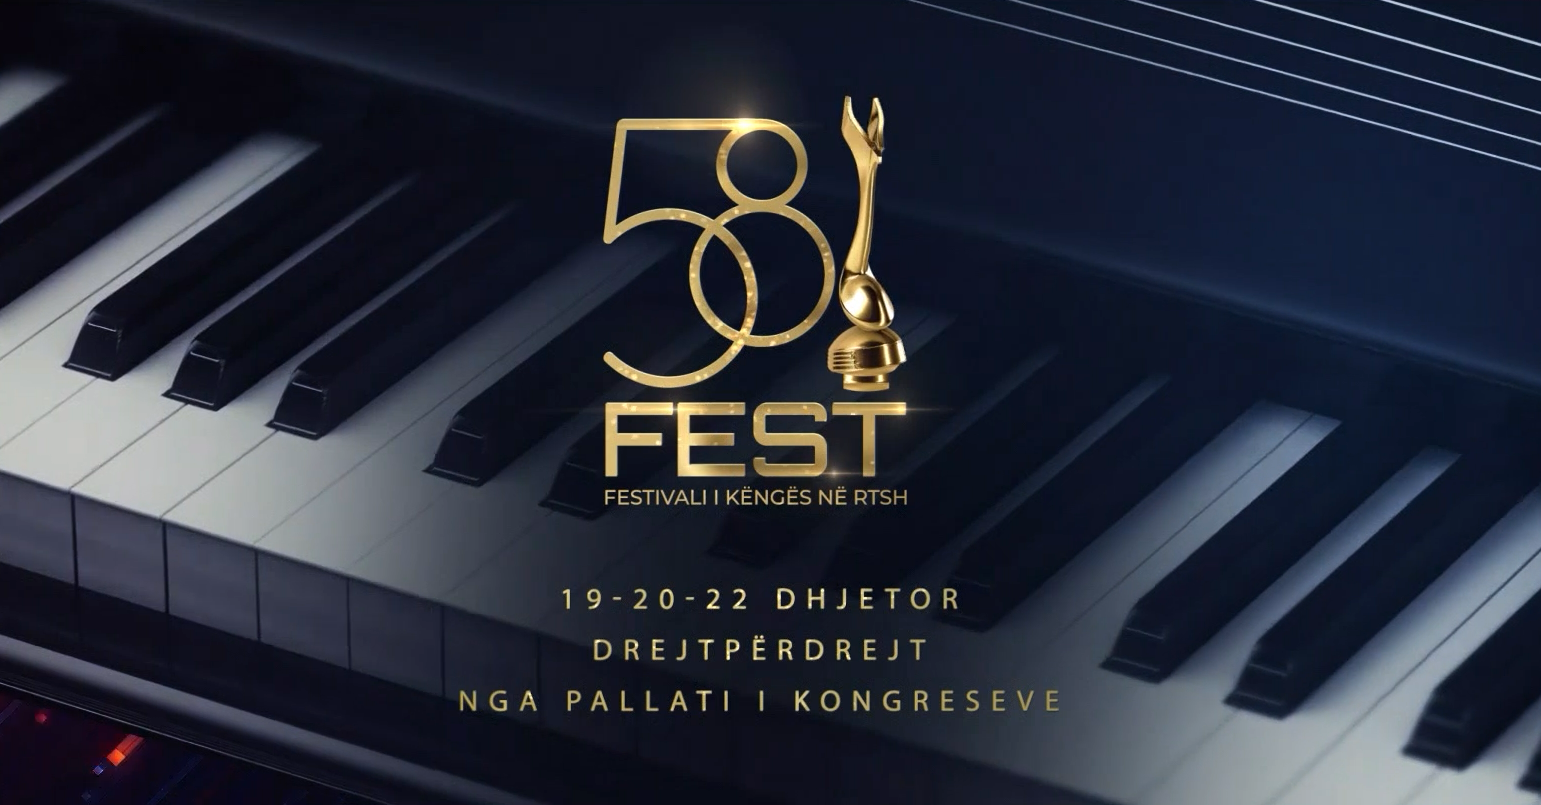 Albania: Listen to Festivali i Këngës 2019 songs